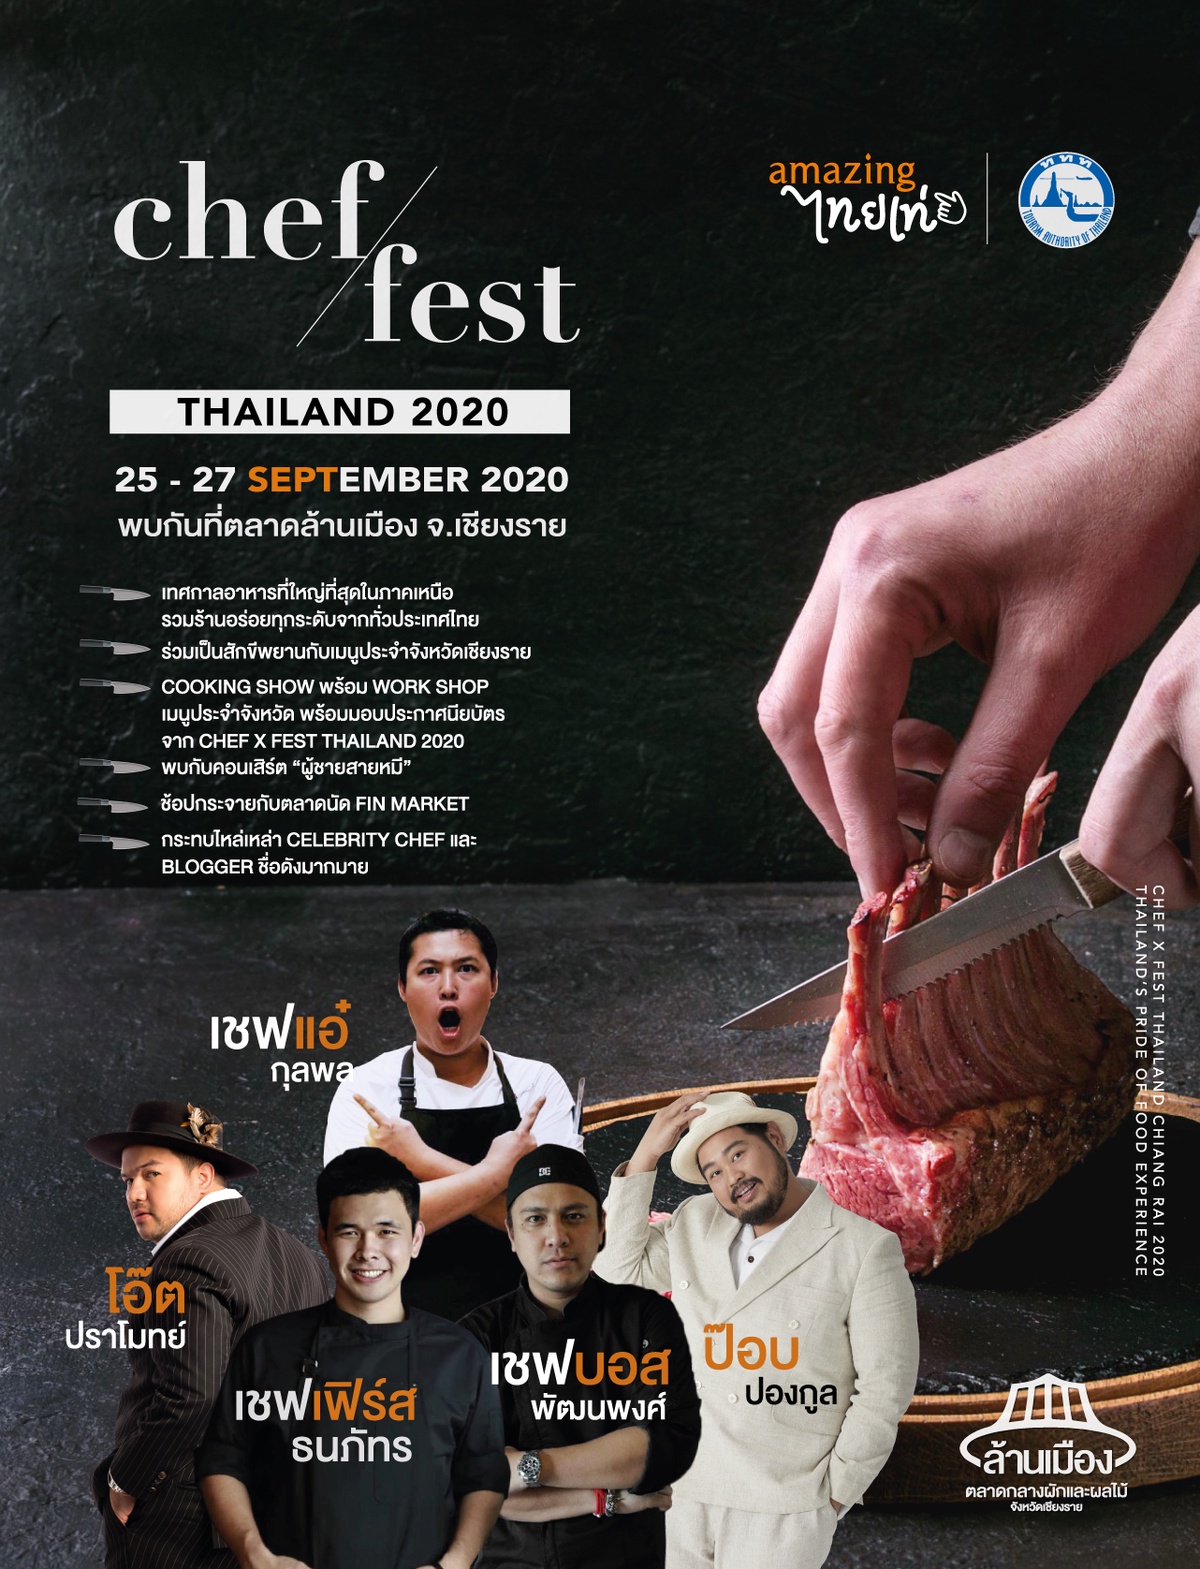 เทศกาลอาหาร พร้อมกิจกรรมสุดพิเศษ กับงาน Chef/Fest Thailand 2020 วันที่ 25-27 กันยายน 2563 ณ ตลาดล้านเมือง จ.เชียงราย สนับสนุนการจัดงานโดย ททท.